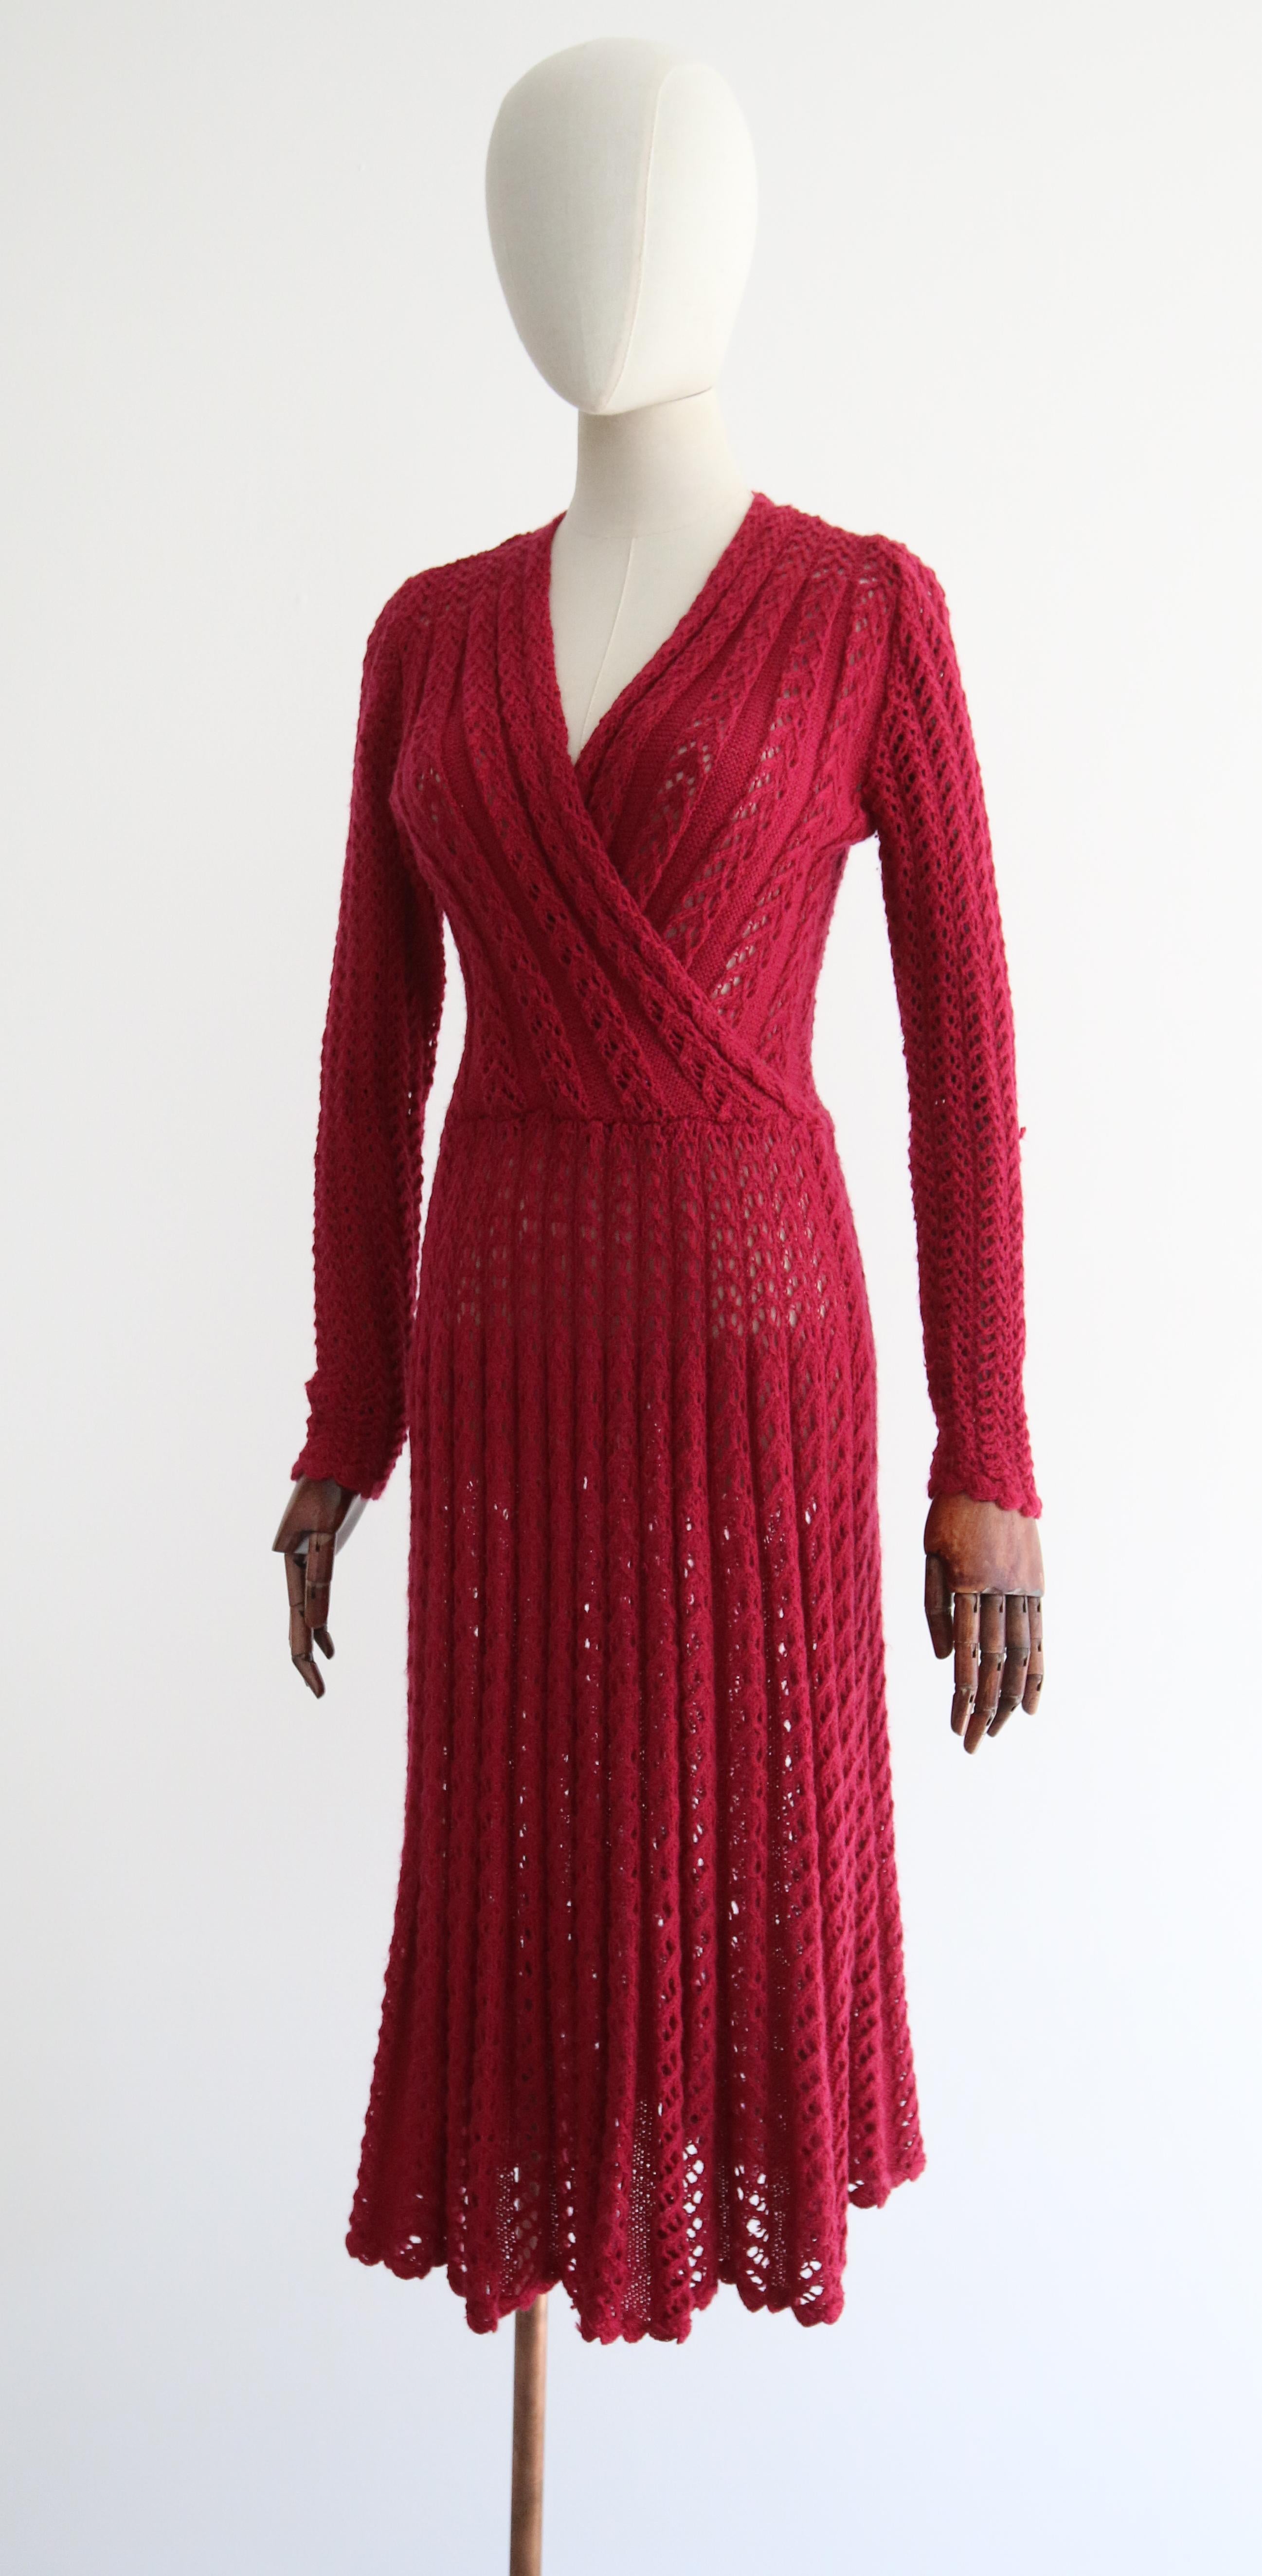 Vintage 1940's Magenta Knitted Dress UK 10-12 US 6-8 For Sale 2